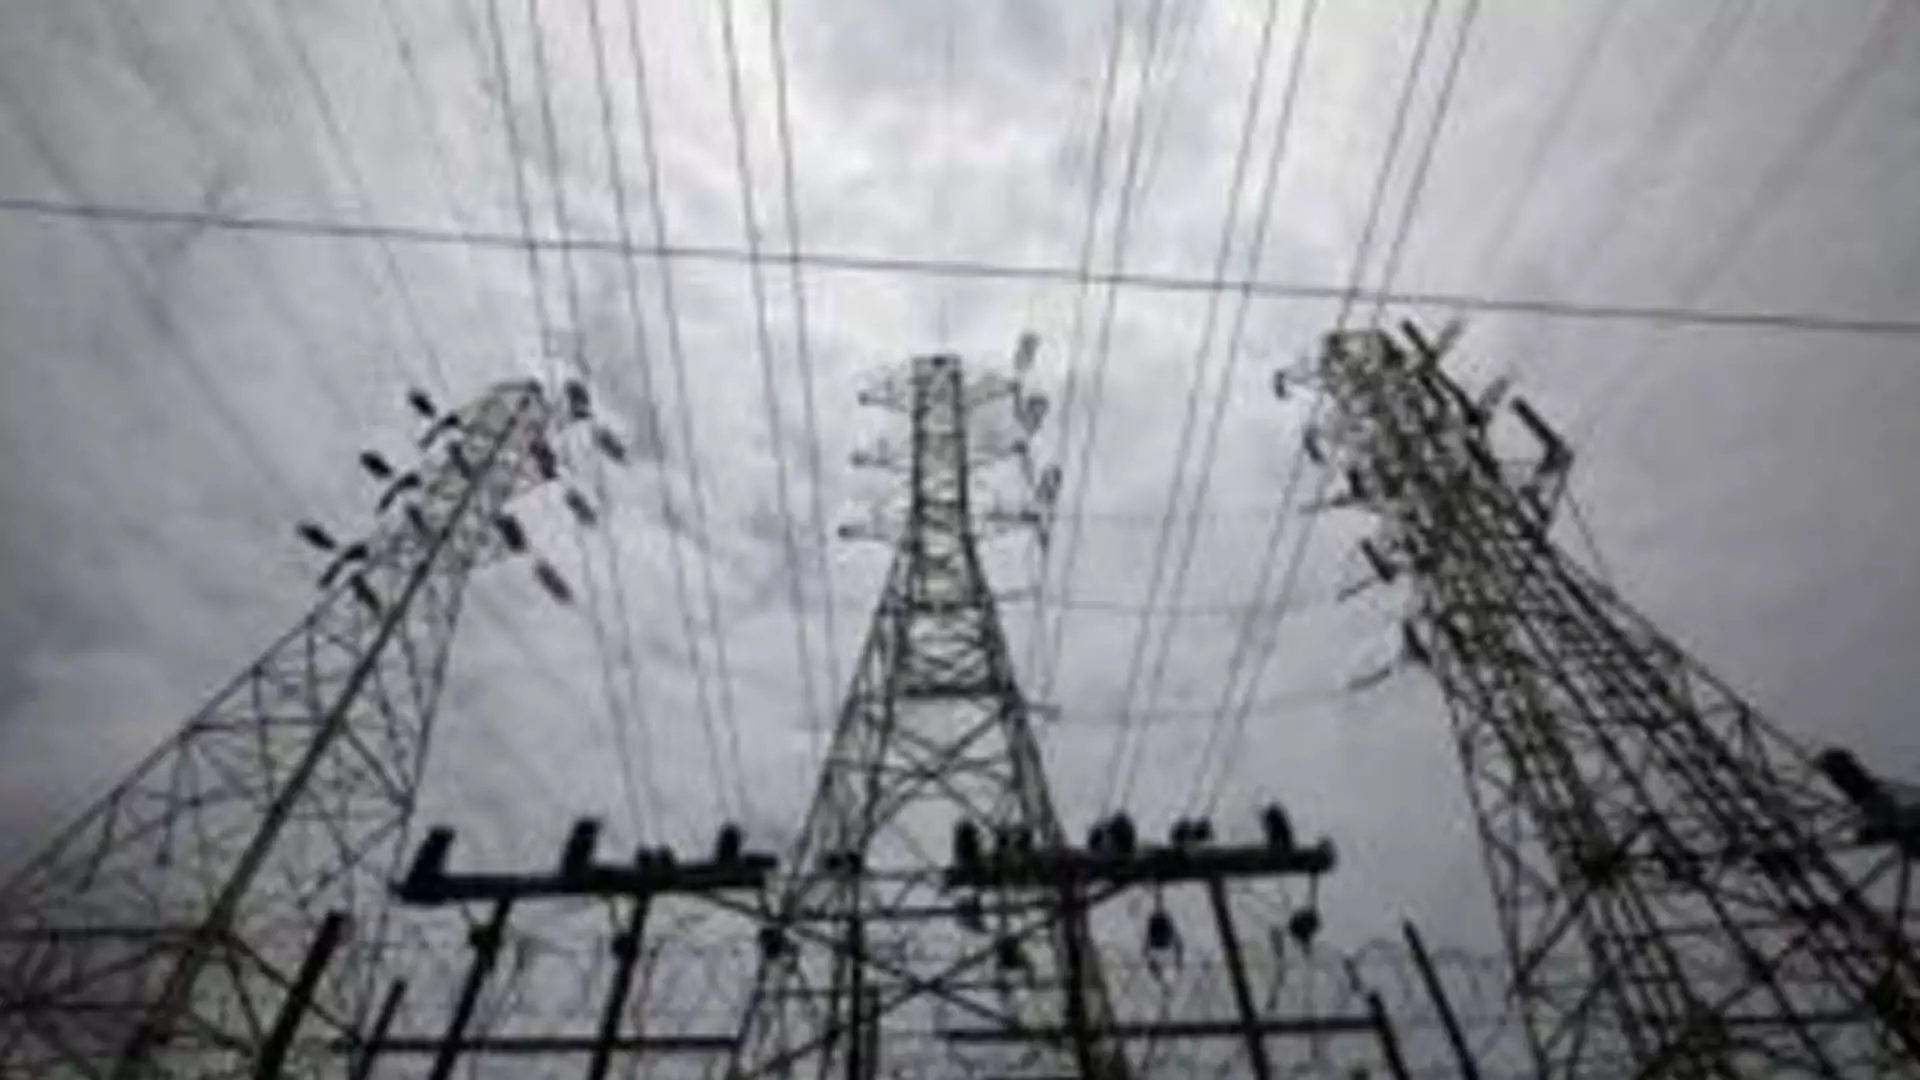 Tamil Nadu News : टीएनईआरसी ने बिजली दरें बढ़ाईं